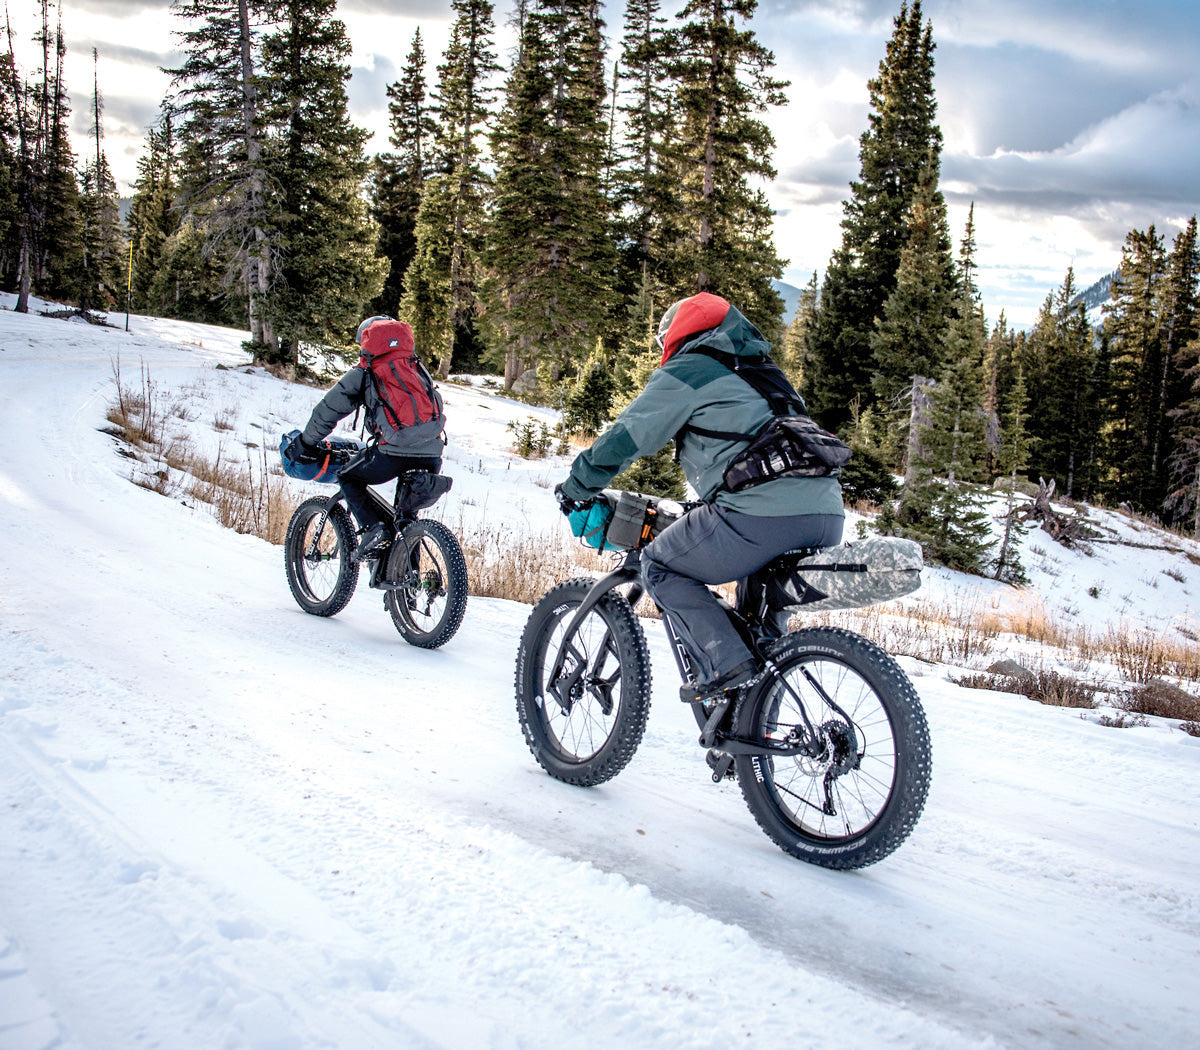 Wigwam sock wearers mountain biking on snowy terrain